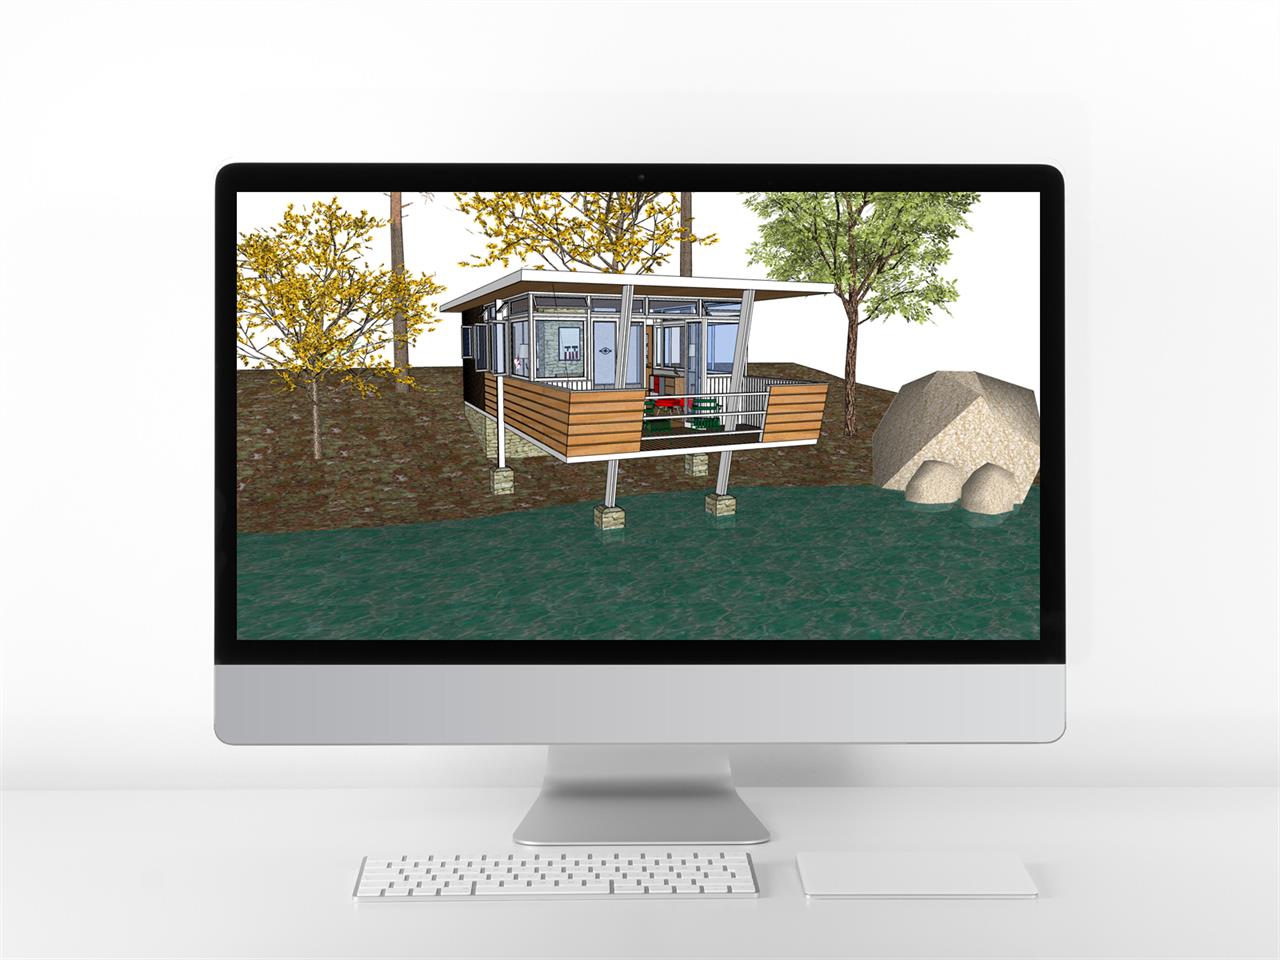 맞춤형 별장주택 디자인 웹툰배경 템플릿 사이트 미리보기